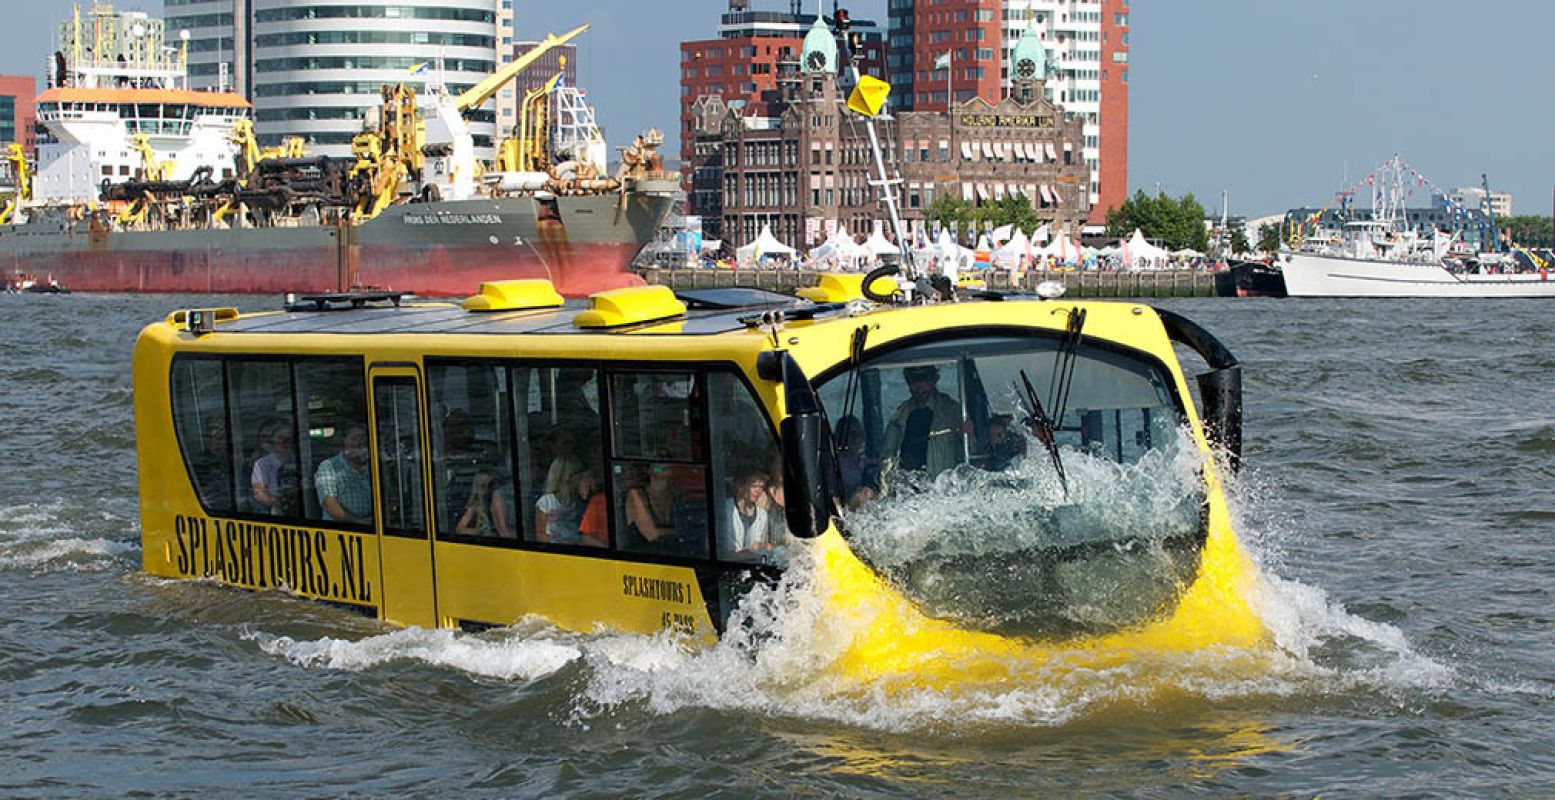 Foto: Splashtours Rotterdam.